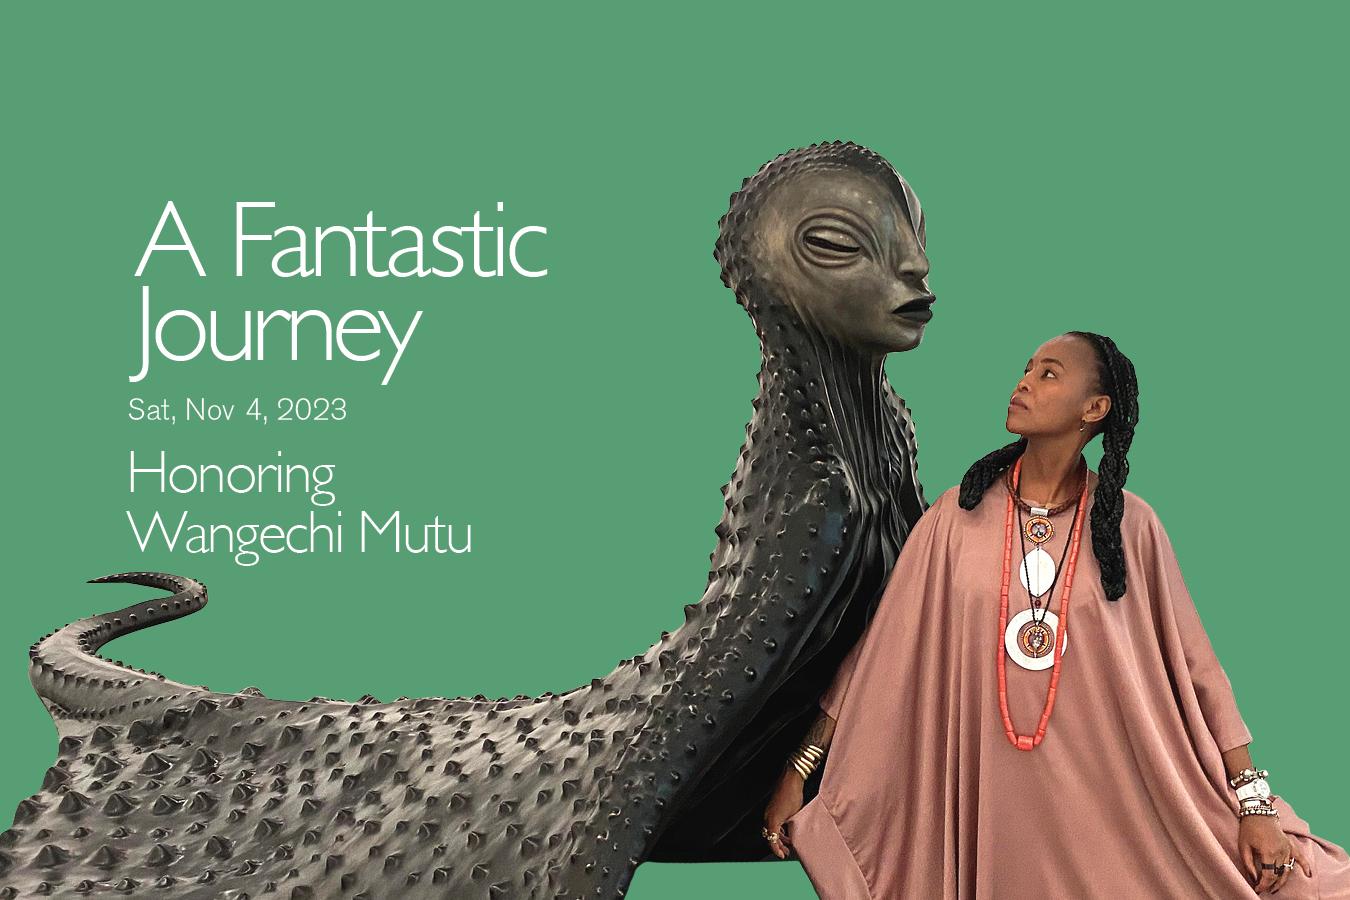 Wangechi Mutu with her monumental sculpture MamaRay